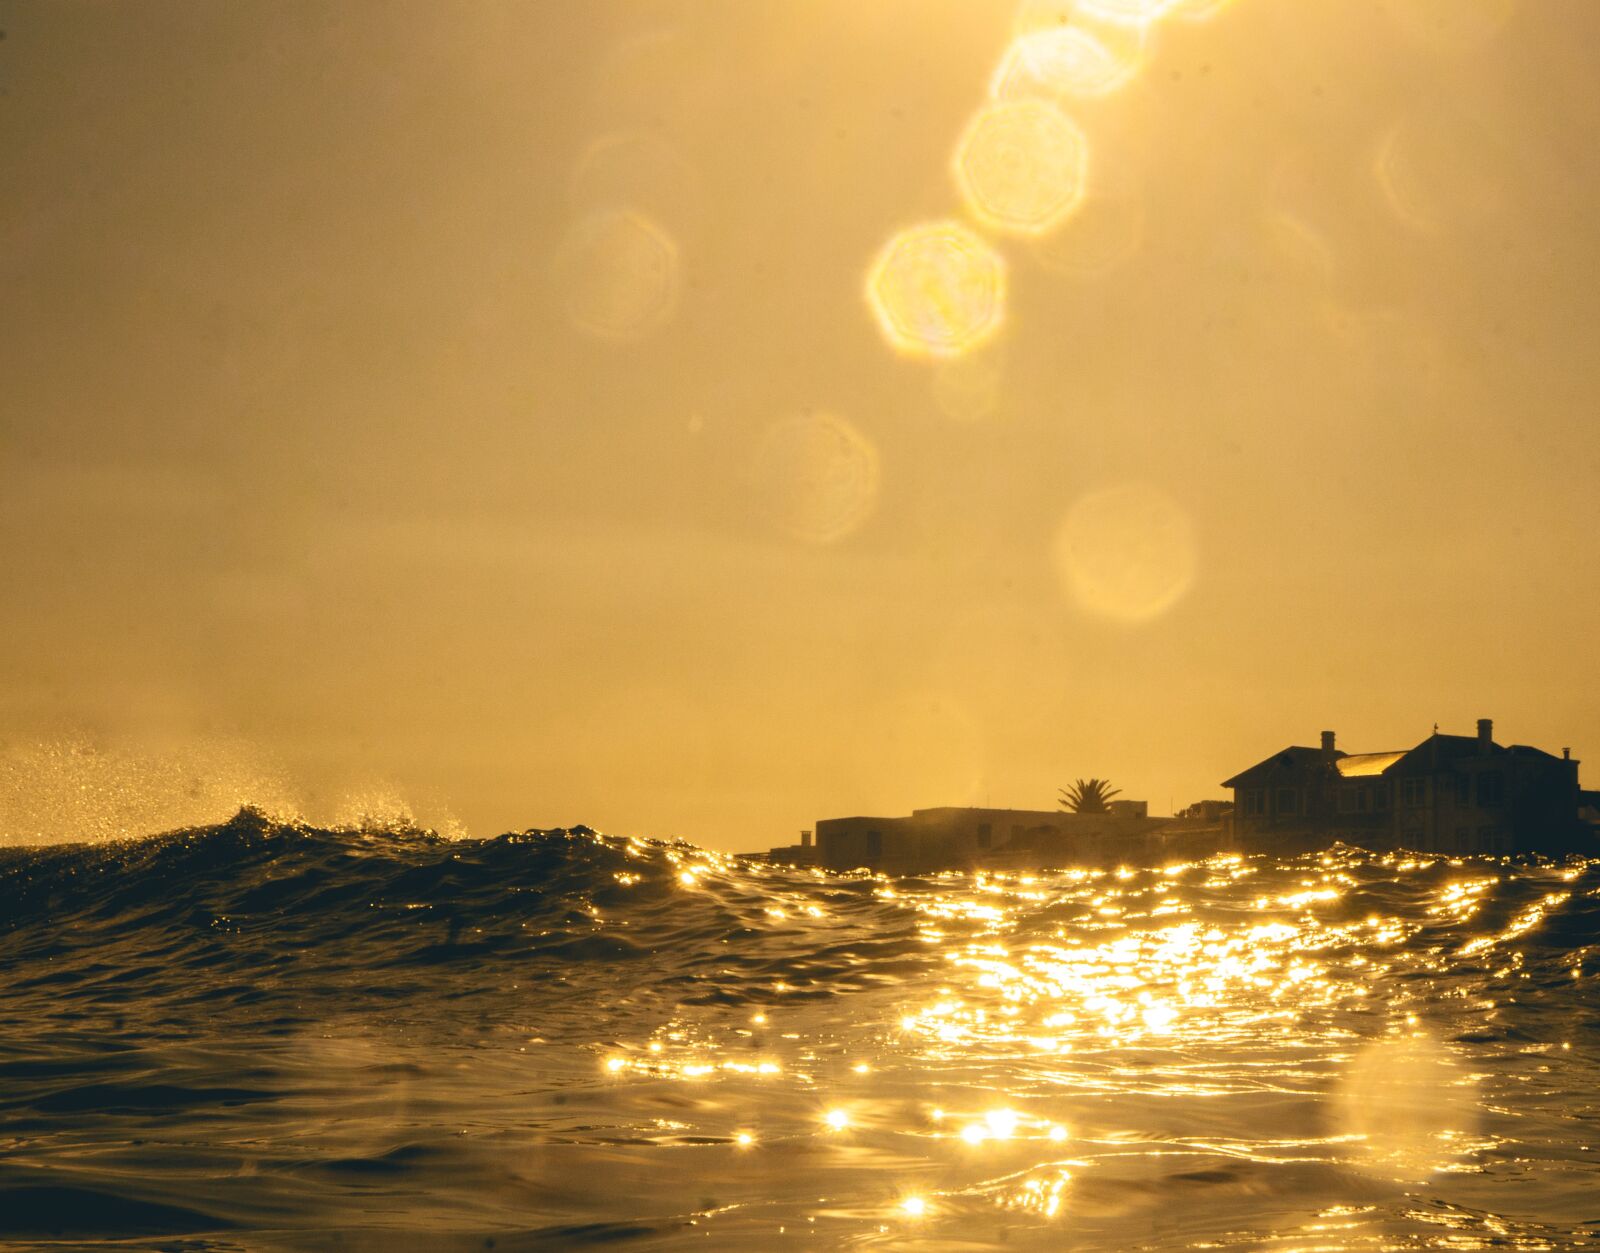 Sony a7R sample photo. Sea, ocean, sunset photography